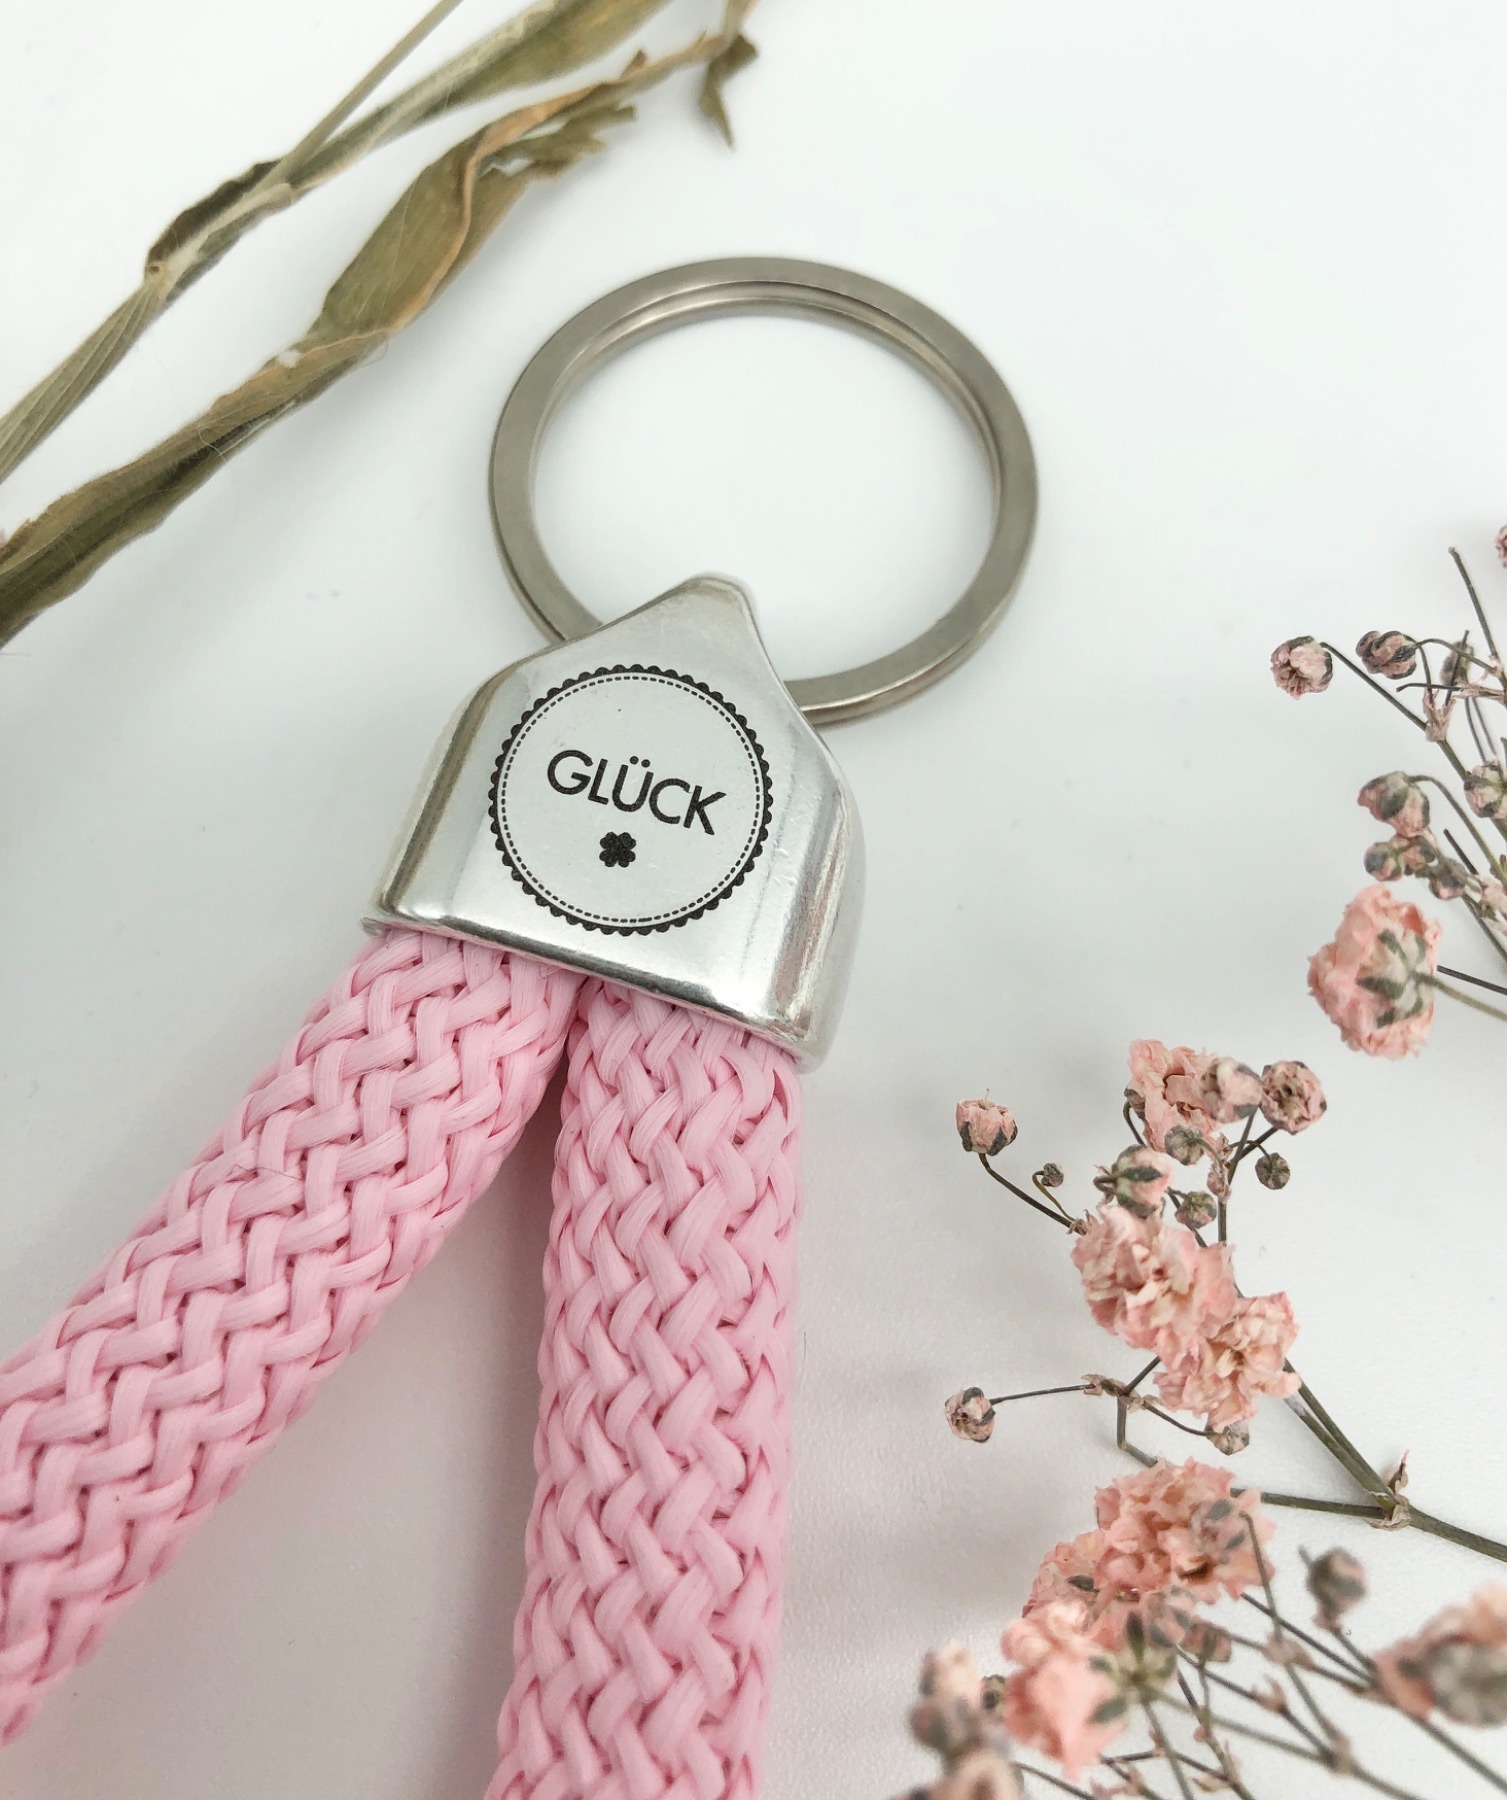 Schlüsselanhänger aus Segeltau Segelseil in rosa mit graviertem Schriftzug Glück